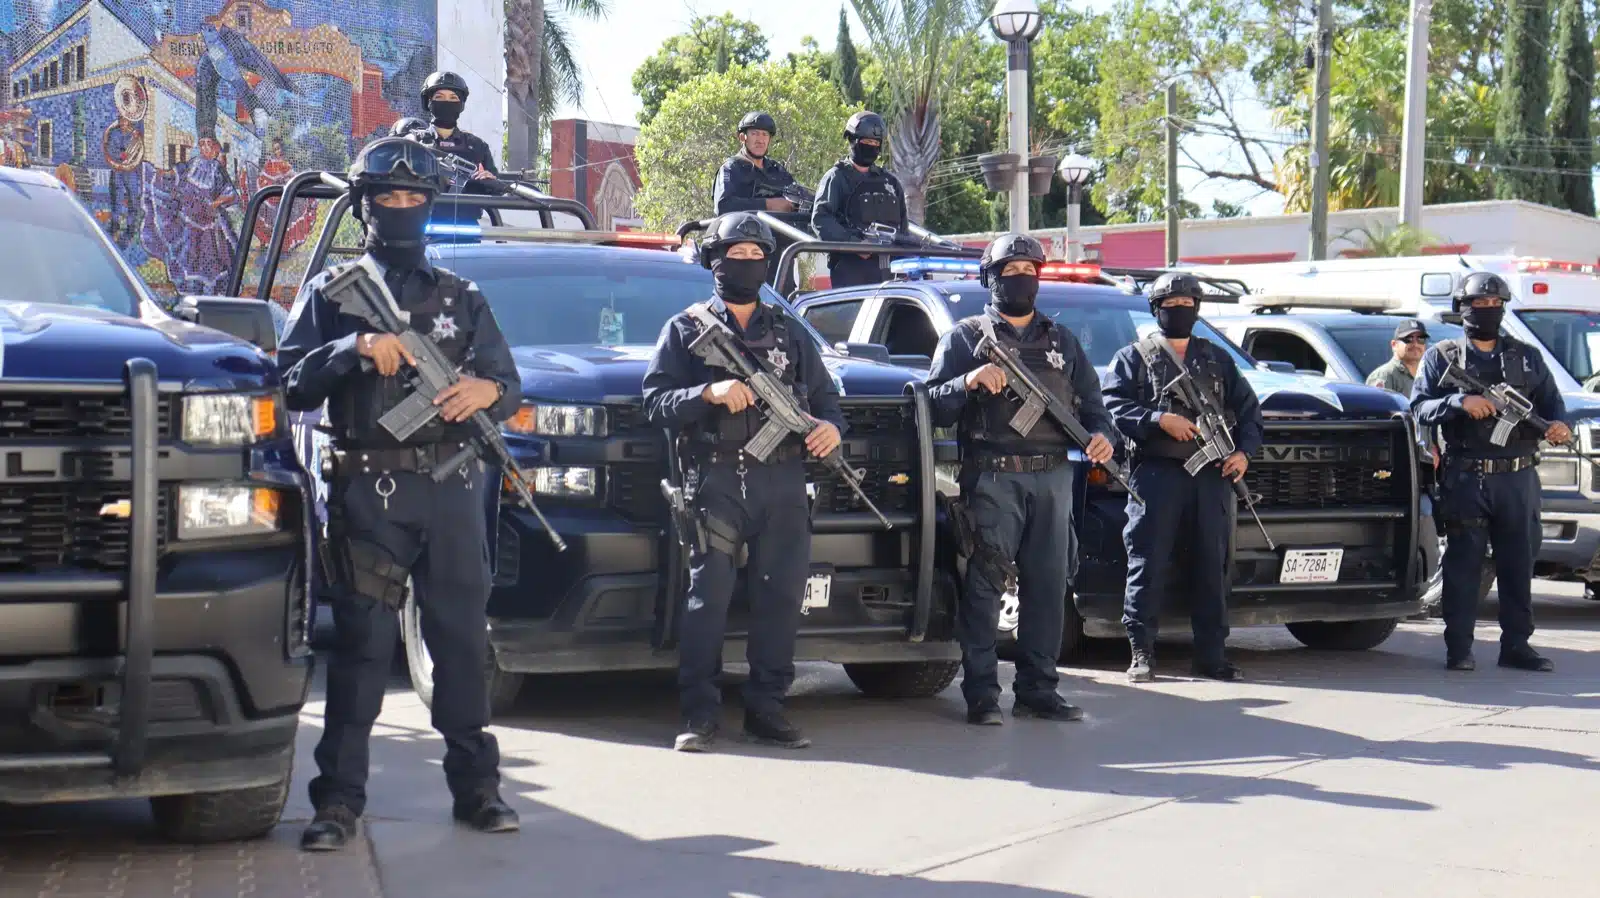 Según algunos reportes, porcentaje de seguridad en Sinaloa va en marcha positiva, al disminuir porcentaje de inseguridad.